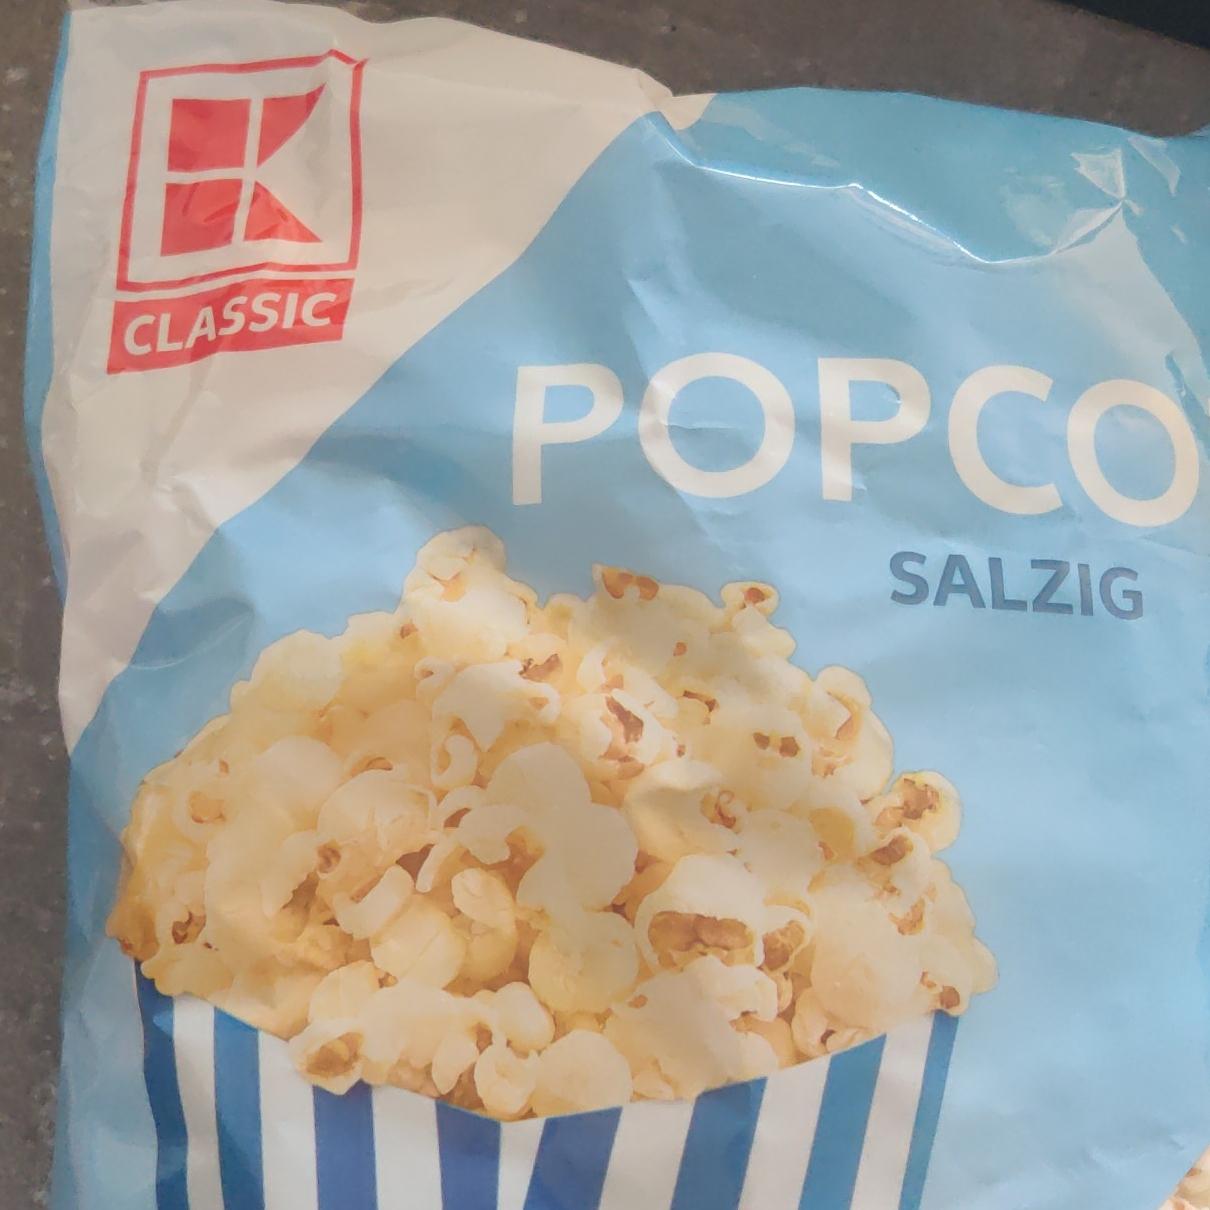 Zdjęcia - Popcorn salzig K-Classic